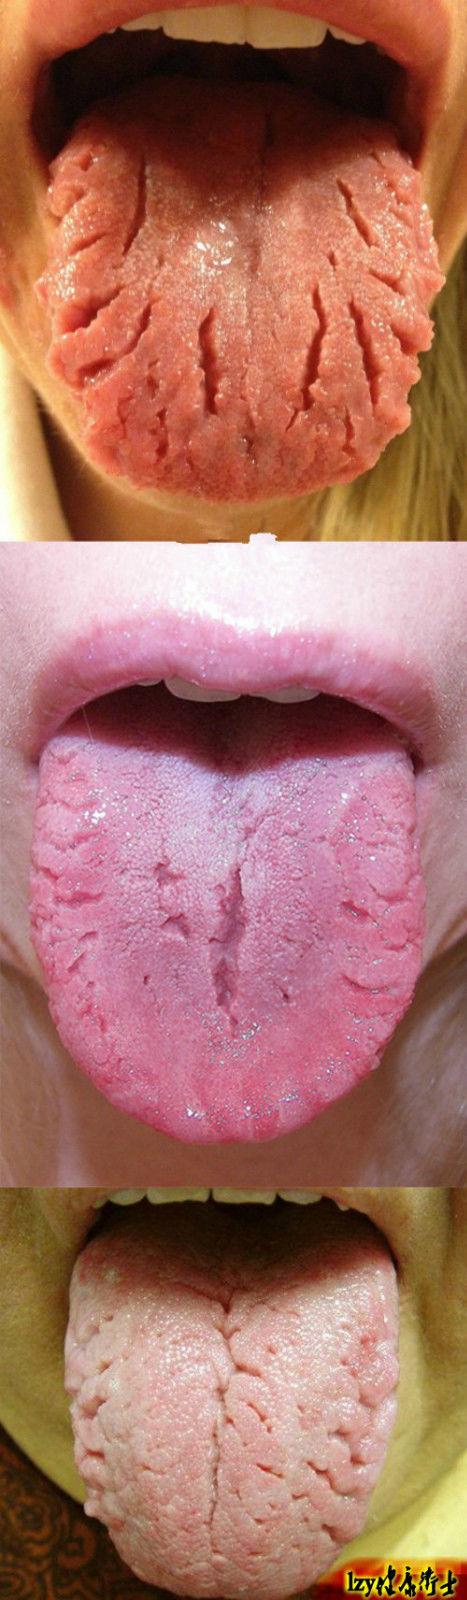 裂纹舌的中医治疗 (转载)